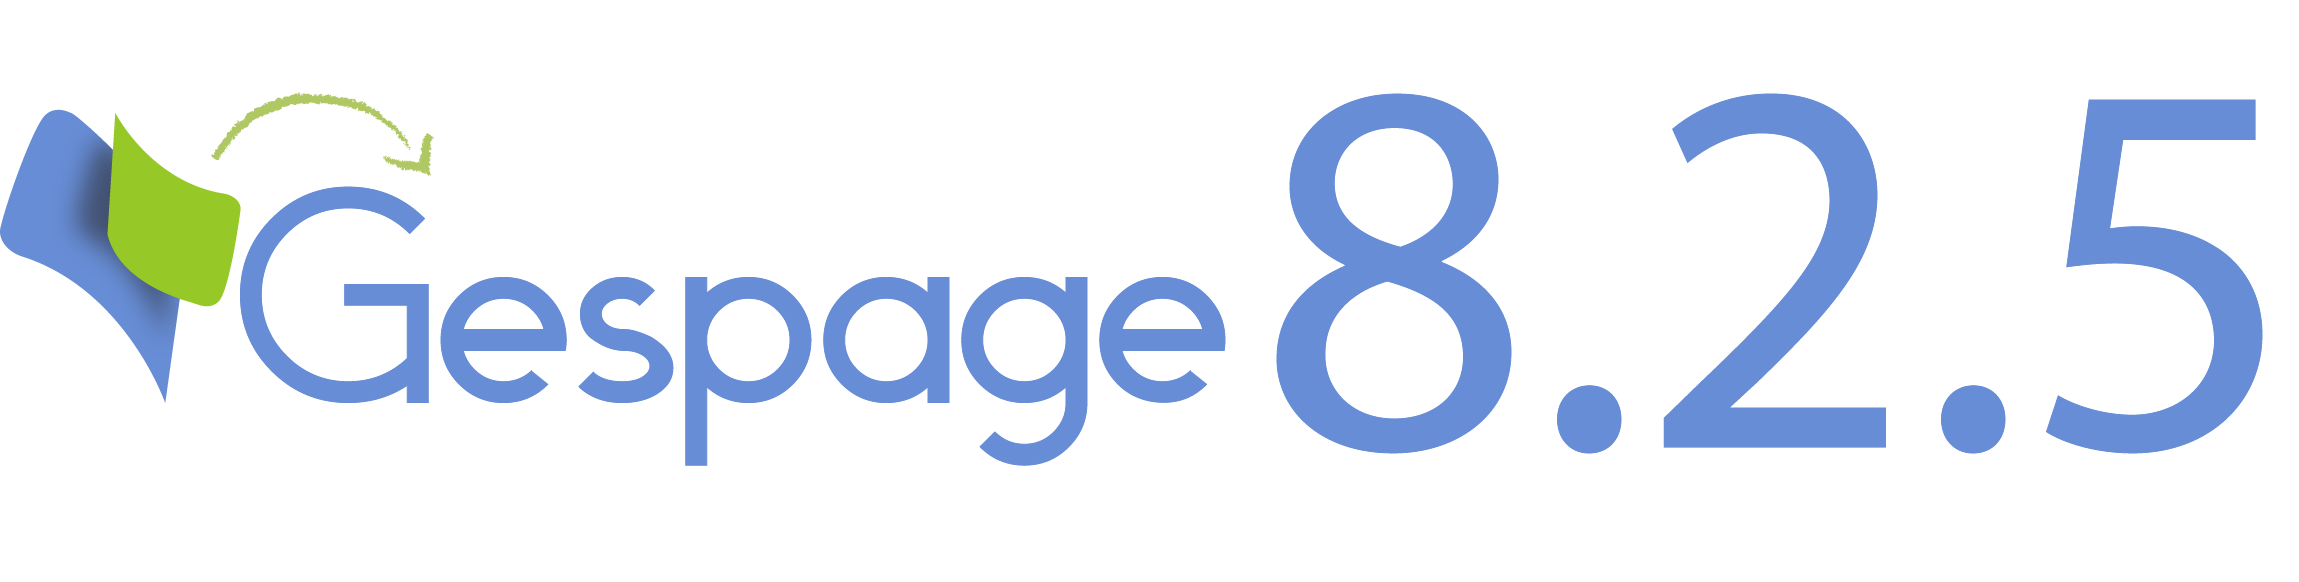 Nouvelle version 8.2.5 de Gespage 3 • Gespage